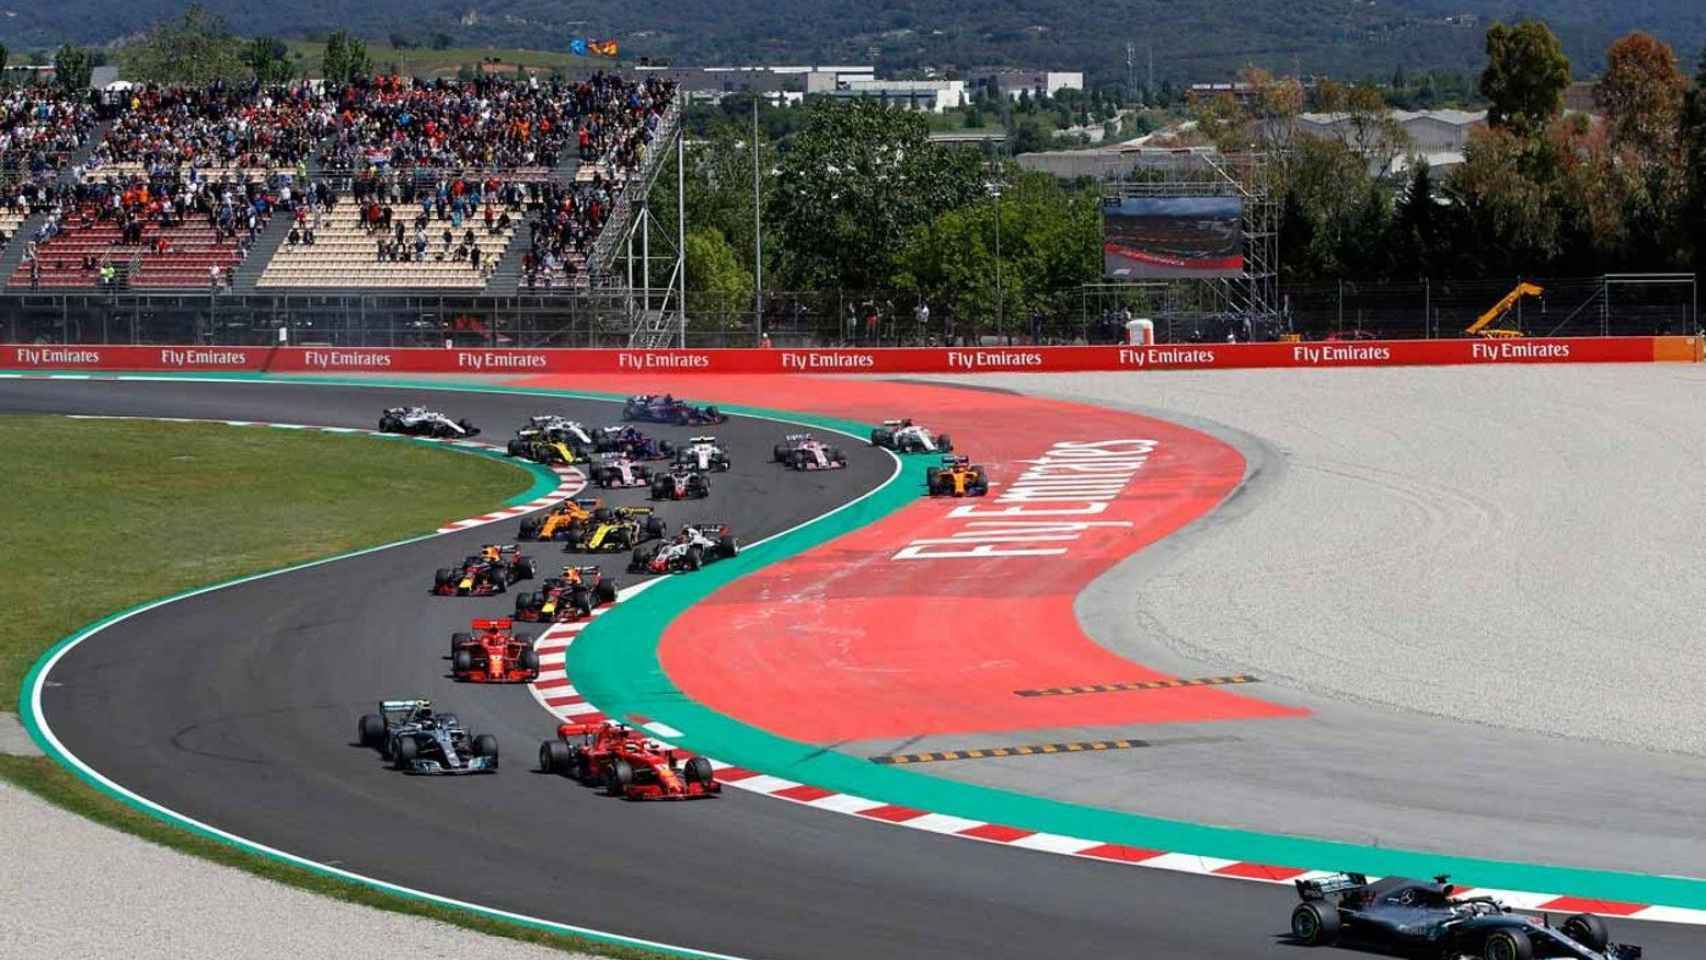 El Circuito de Montmeló durante un gran premio de F1.